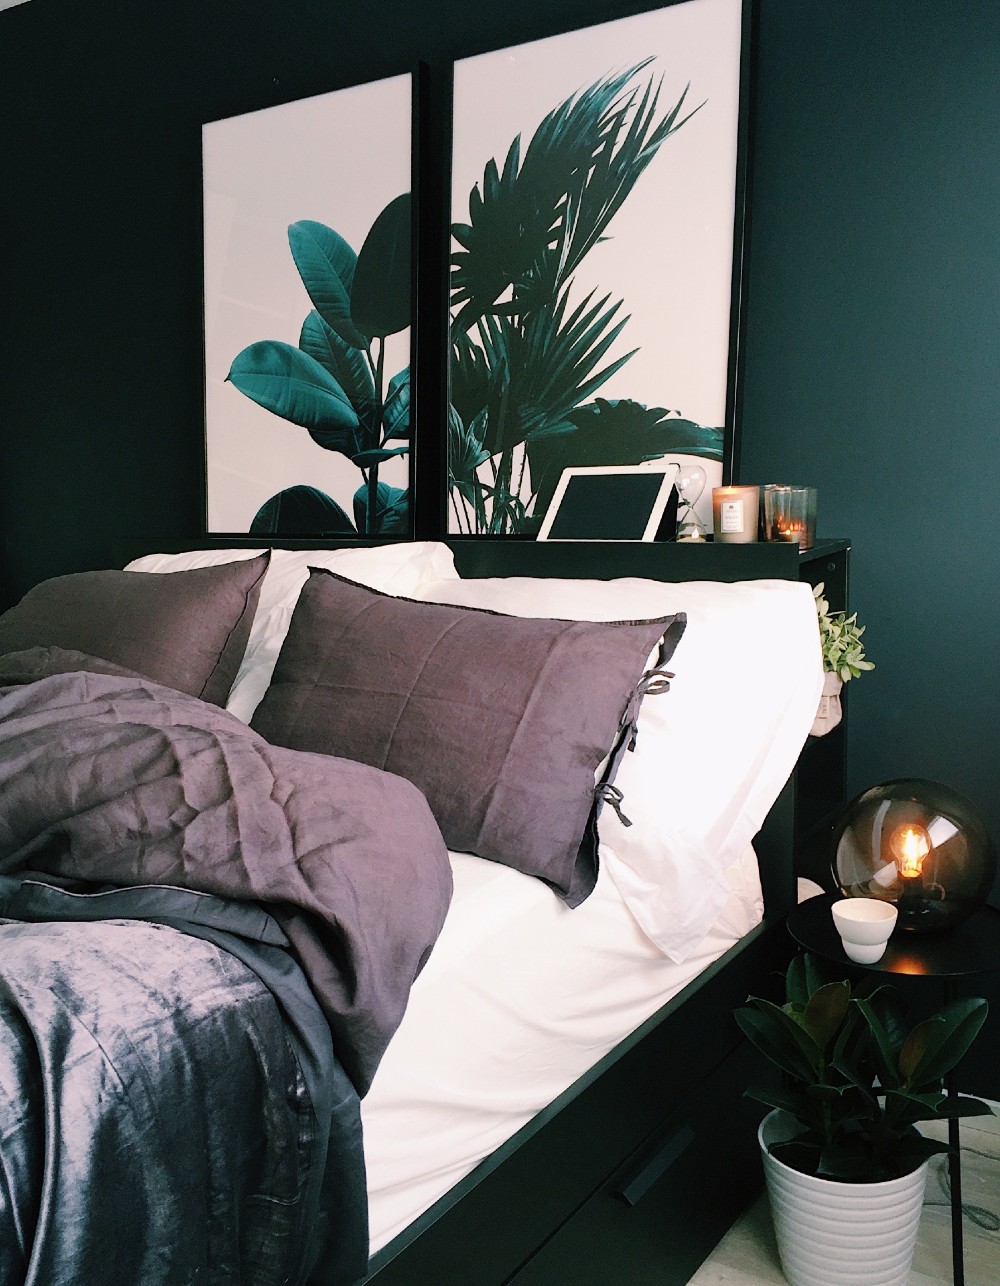 Dark bedroom with plants